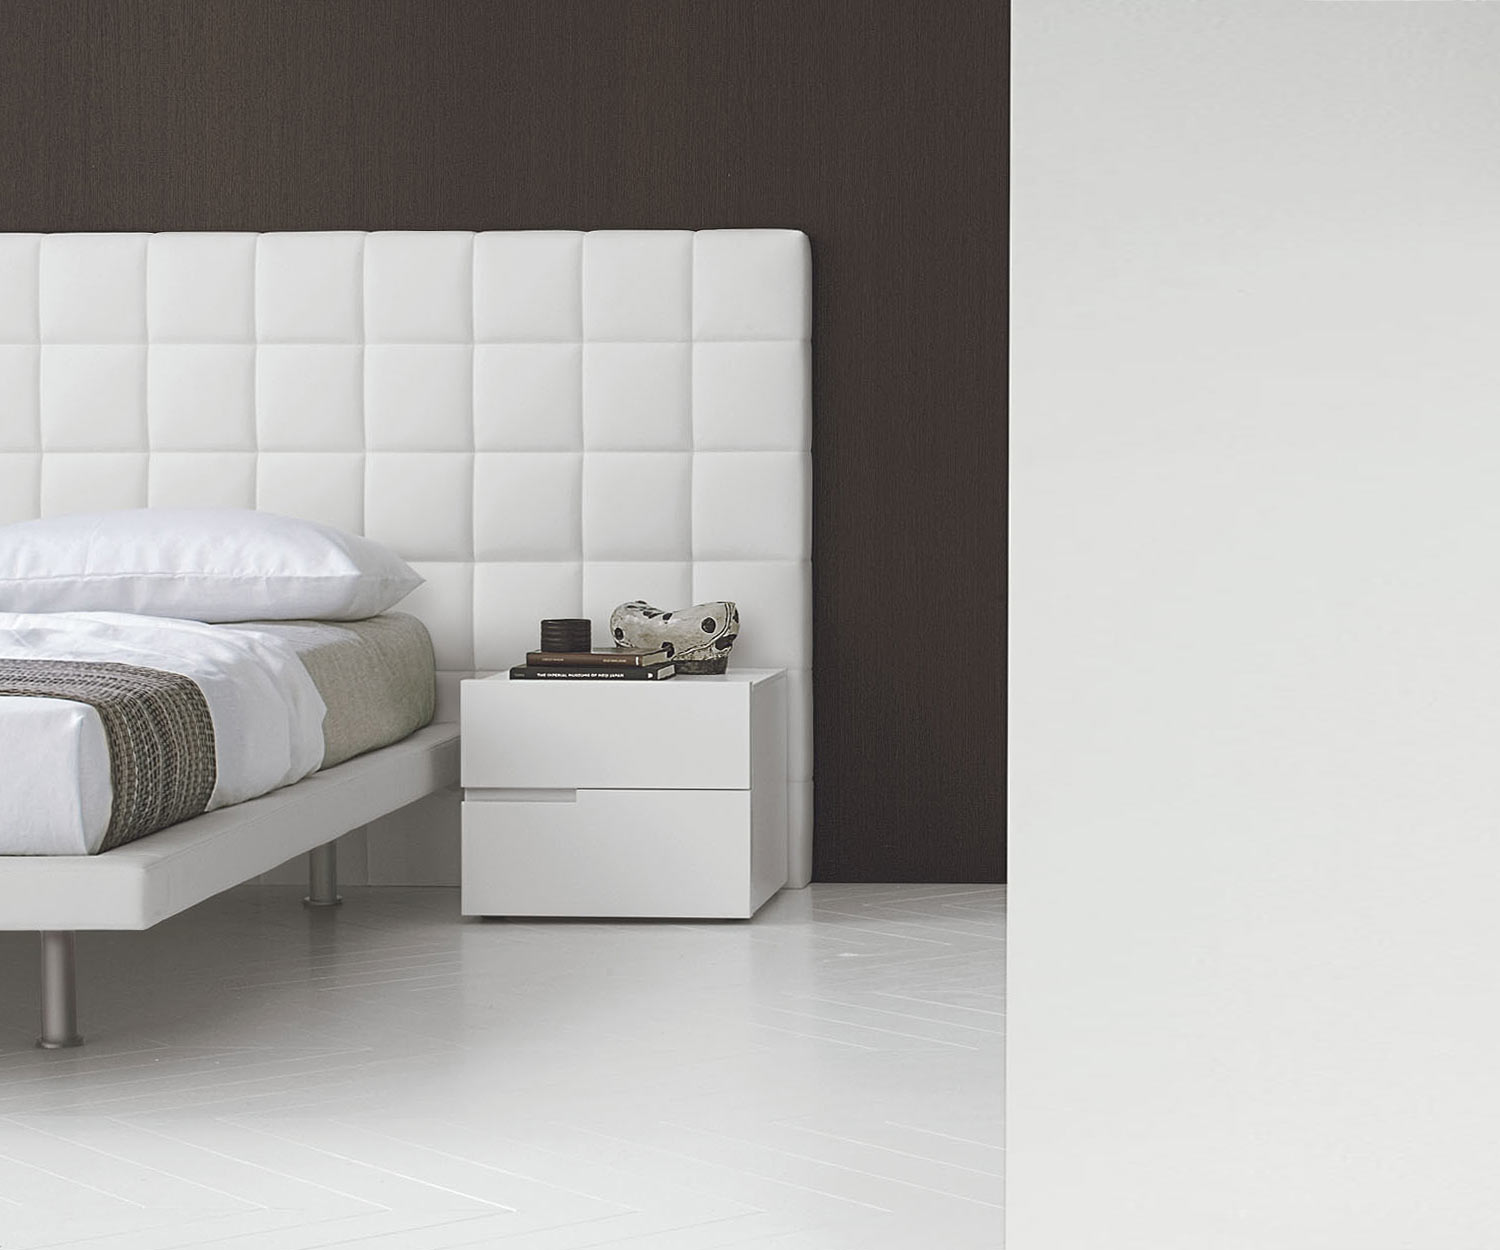 Design Nachttisch mit 2 Schubladen in Weiß im Schlafzimmer neben einem Bett